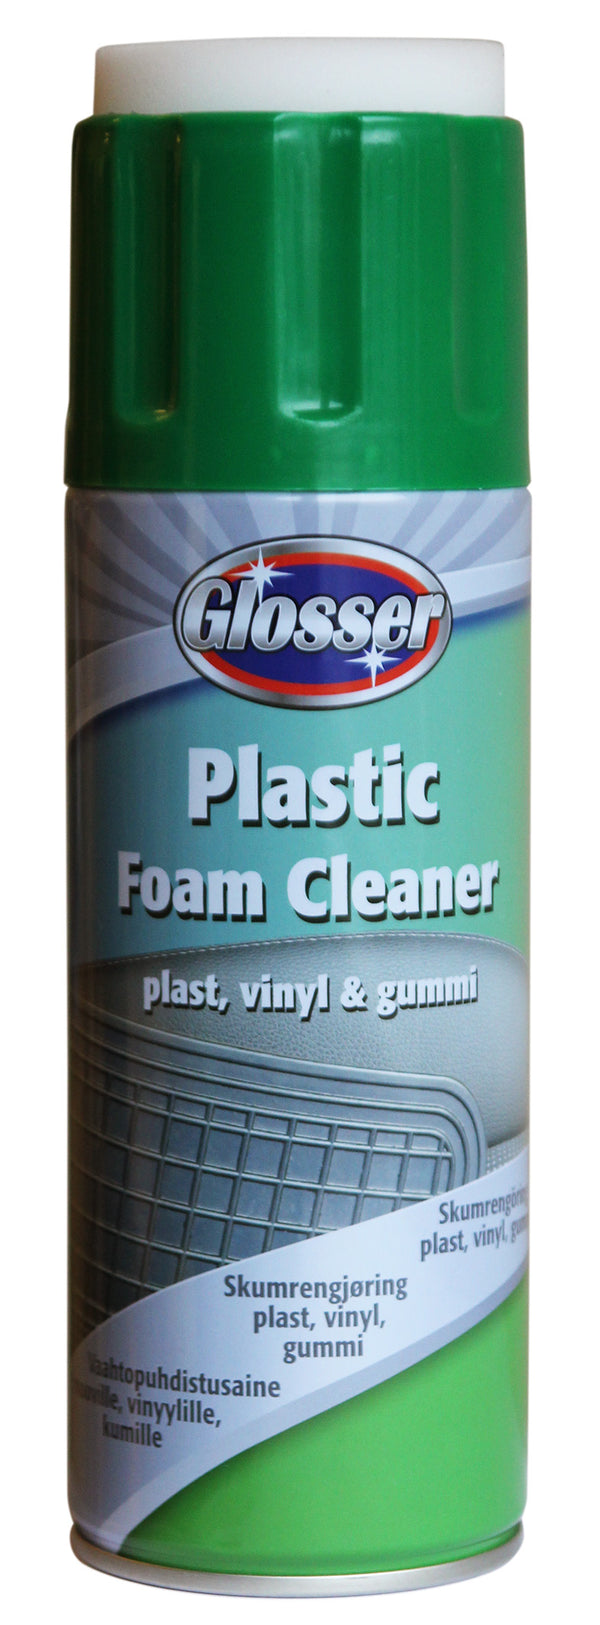 Glosser Foamcleaner Plastic 450ml.